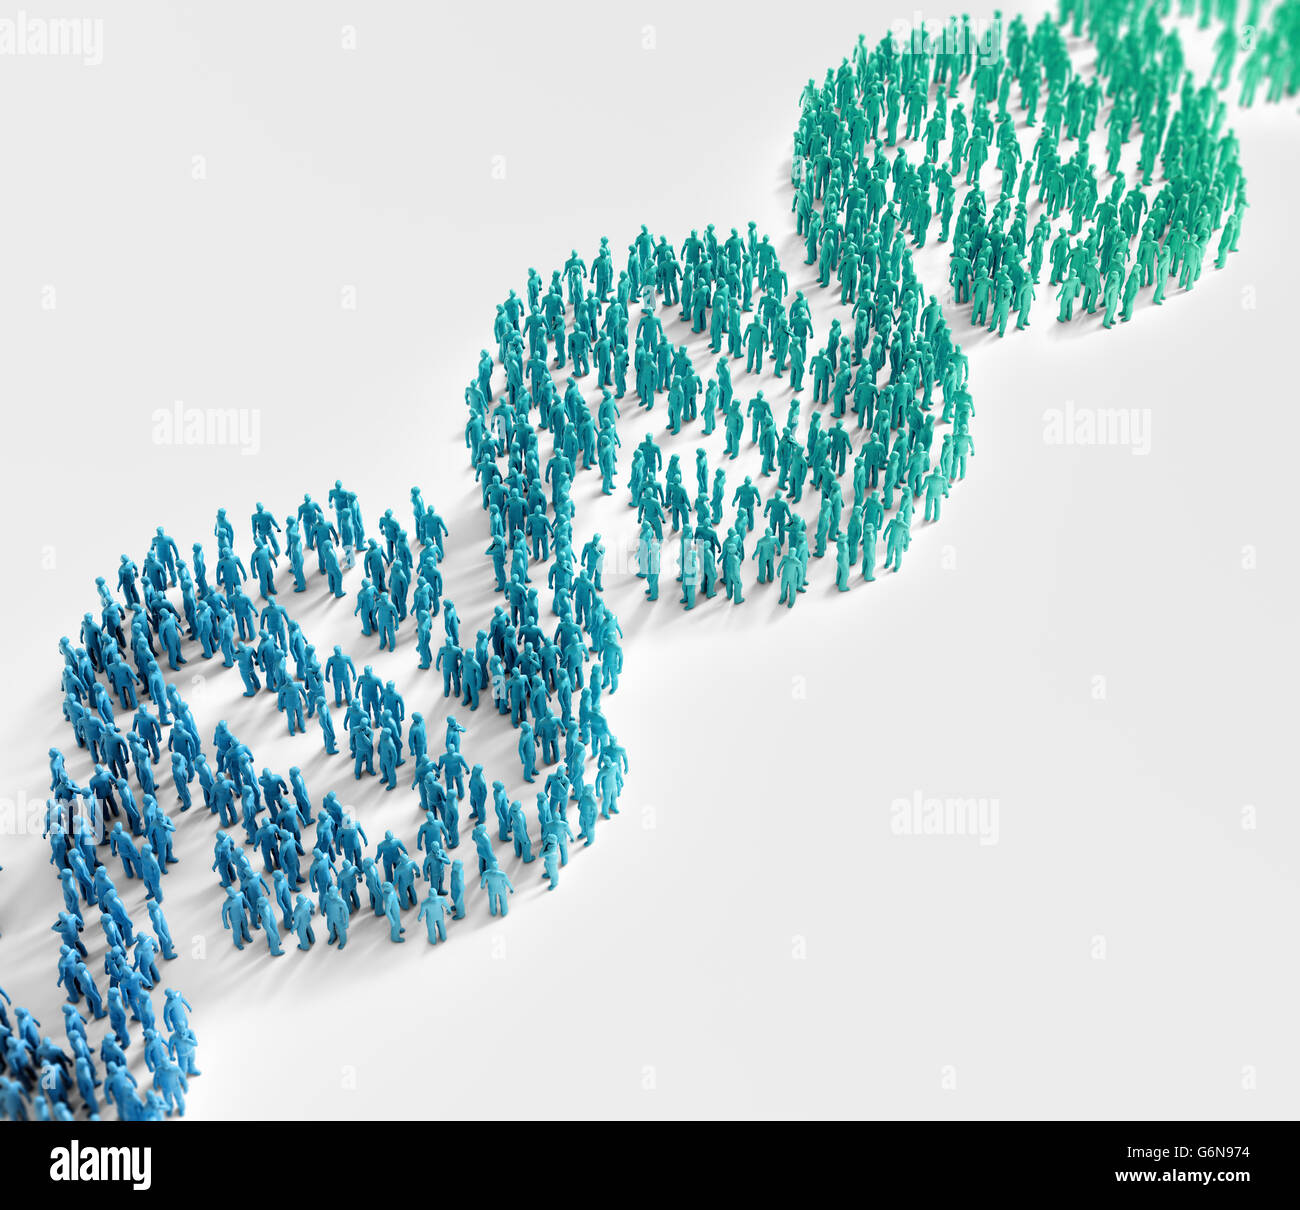 Les gens minuscules formant une hélice de l'ADN - la recherche génétique et de l'échelle de la population des traits génétiques concept Banque D'Images